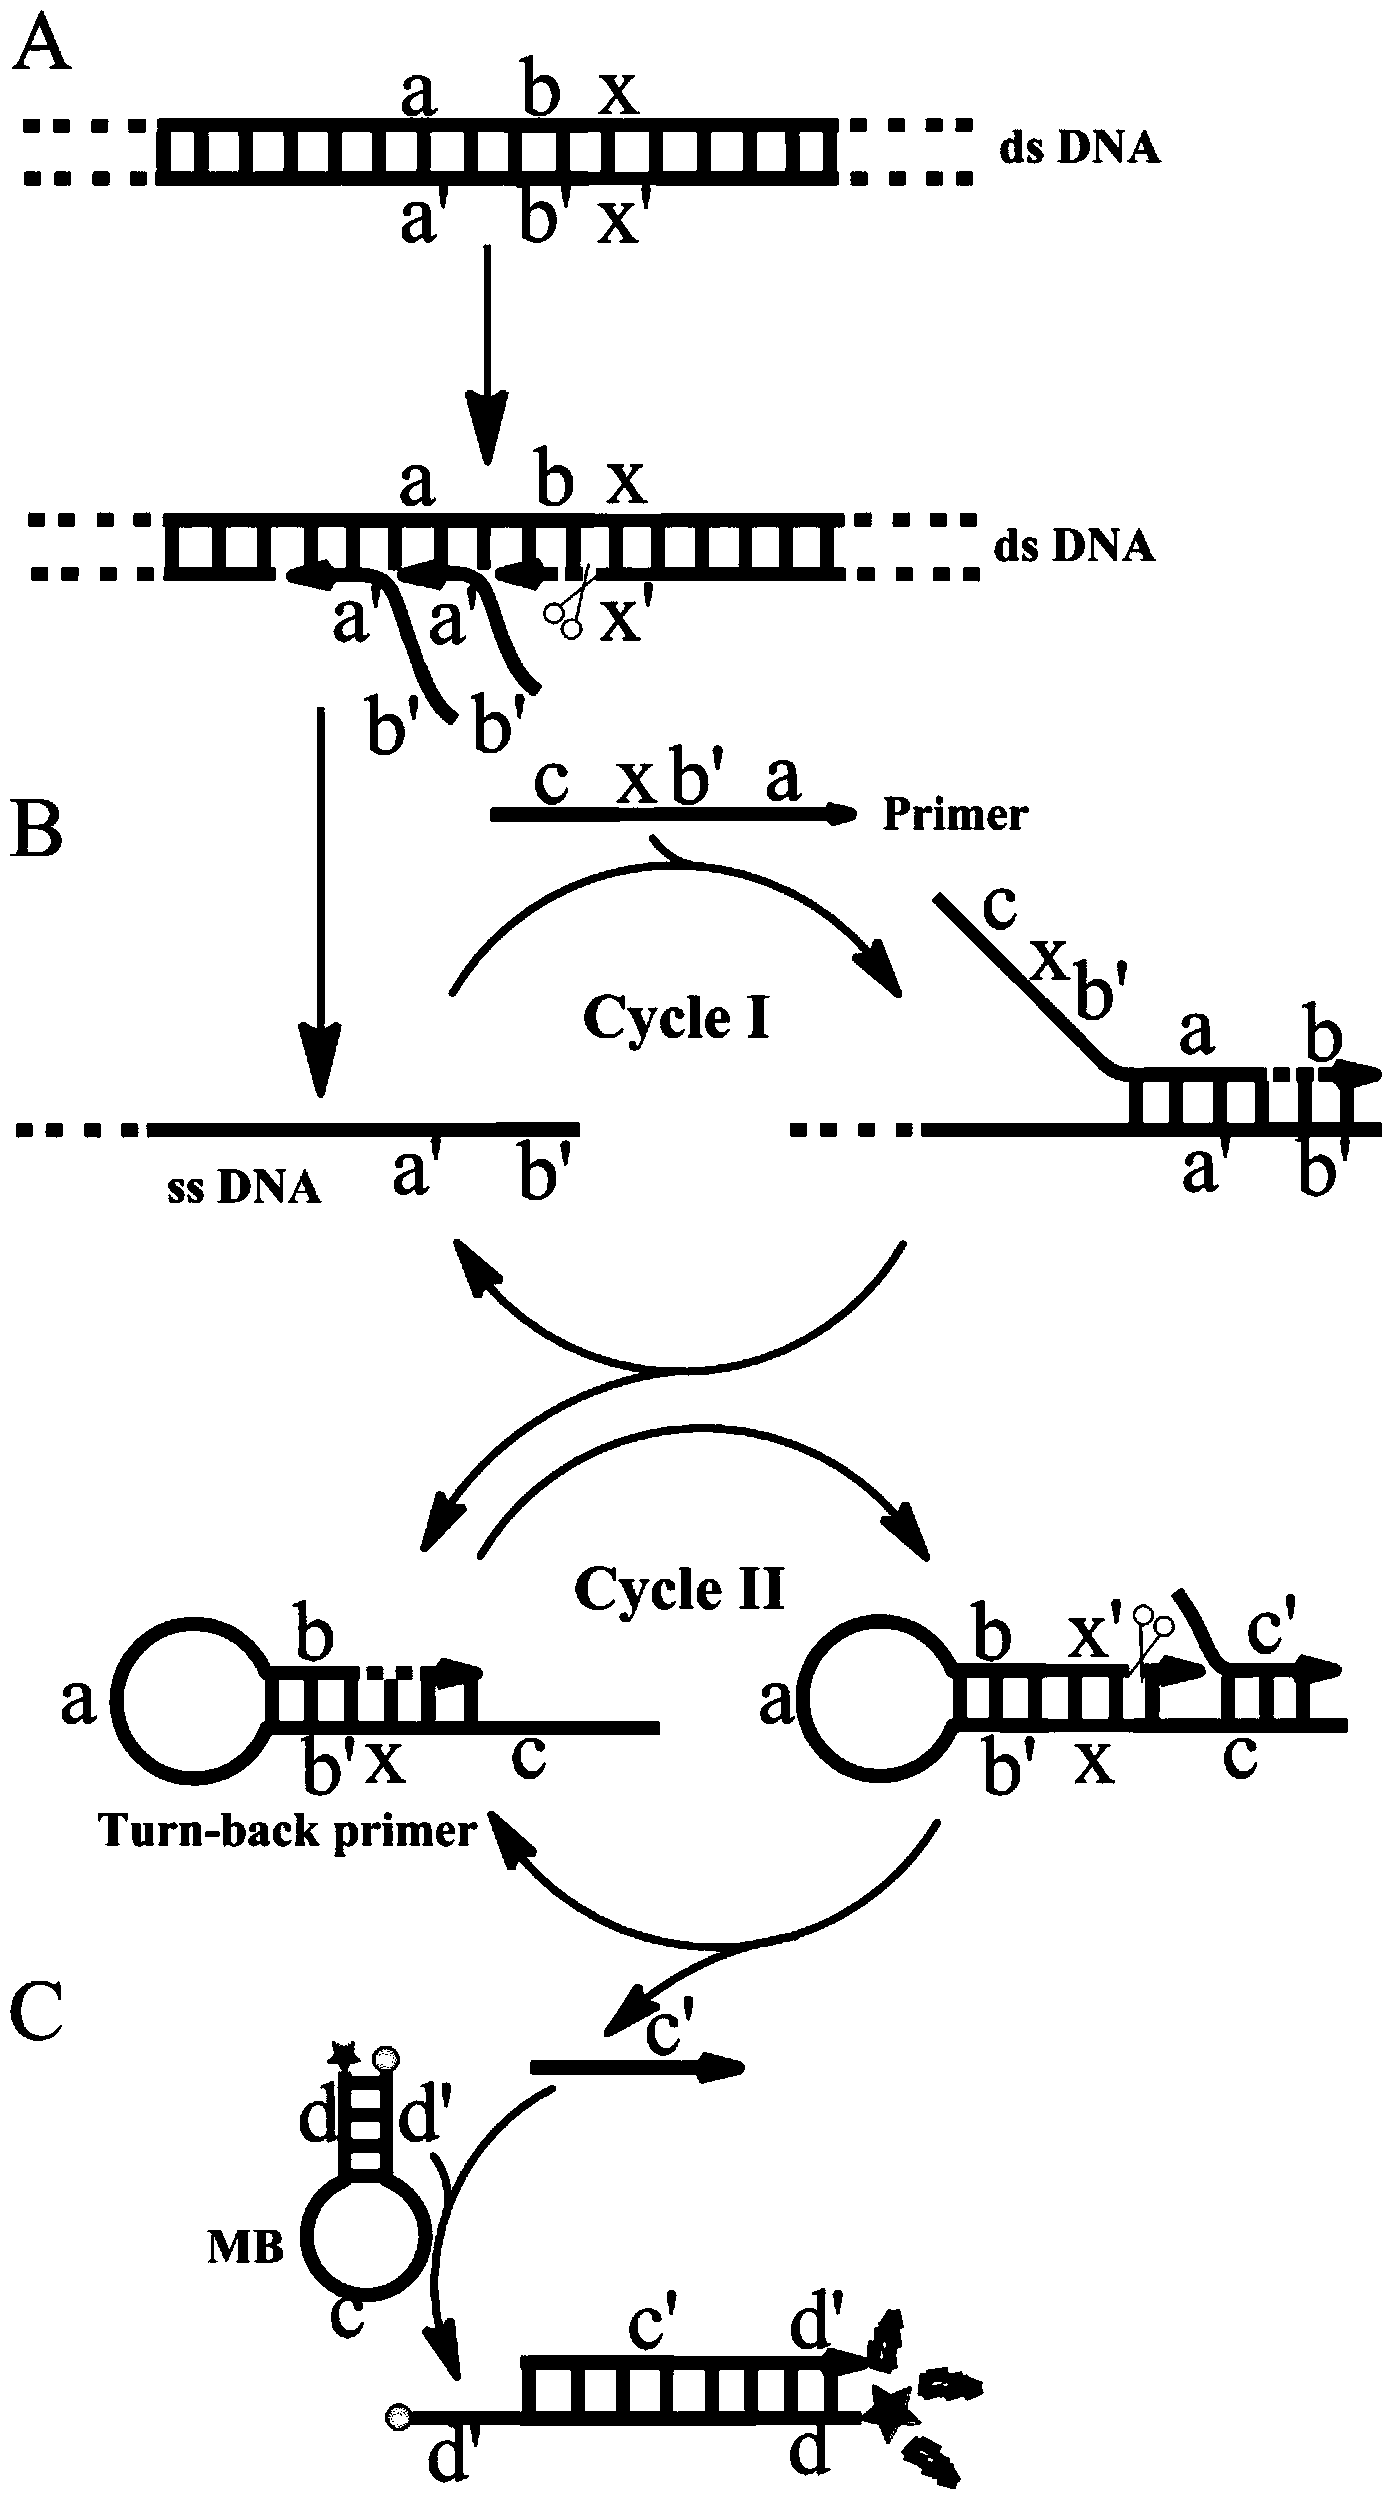 Single primer-initiated nucleic acid constant temperature amplification method